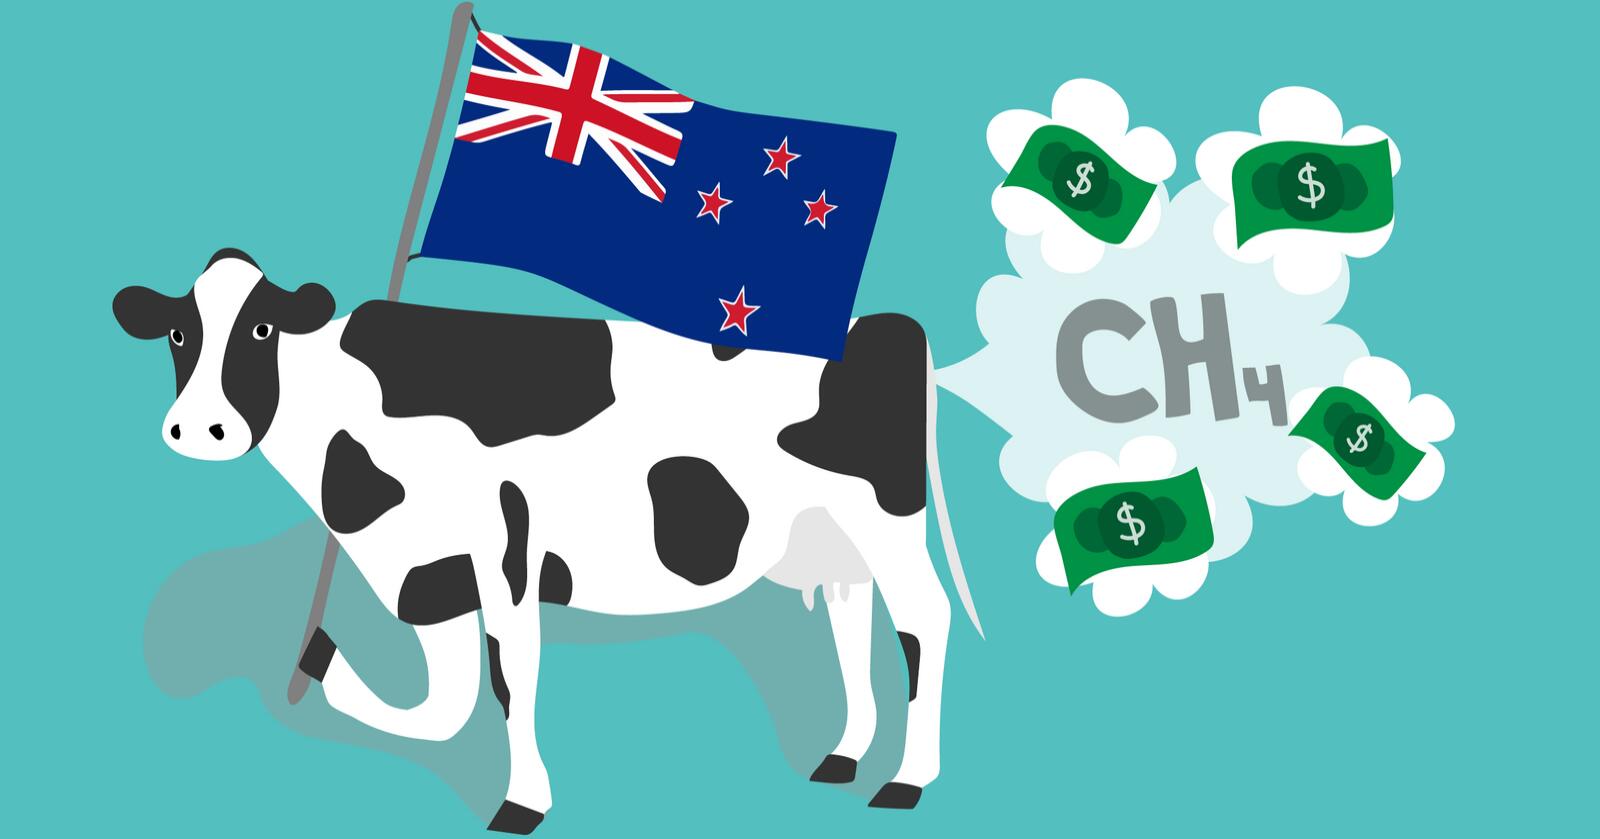 For å få ned klimautslippene på New Zealand vil landets regjering ha en avgift på utslipp fra husdyrhold. Illustrasjon. Illustrasjon: Jarand Ullestad